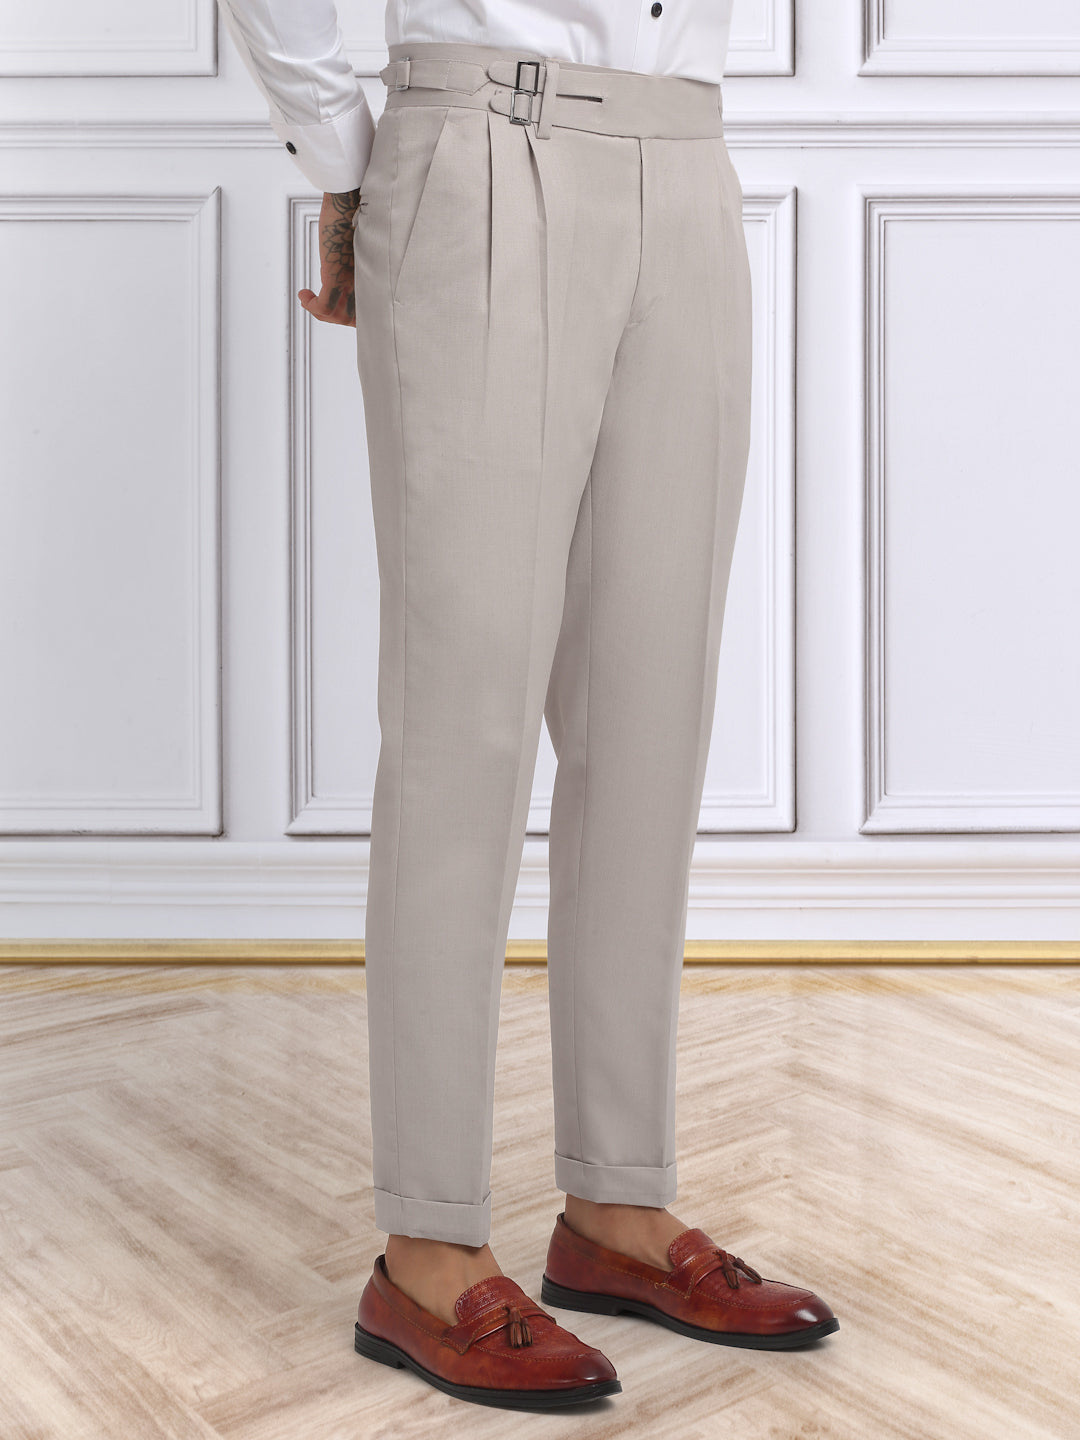 Italian Style Formal Gurkha Pant-Beige